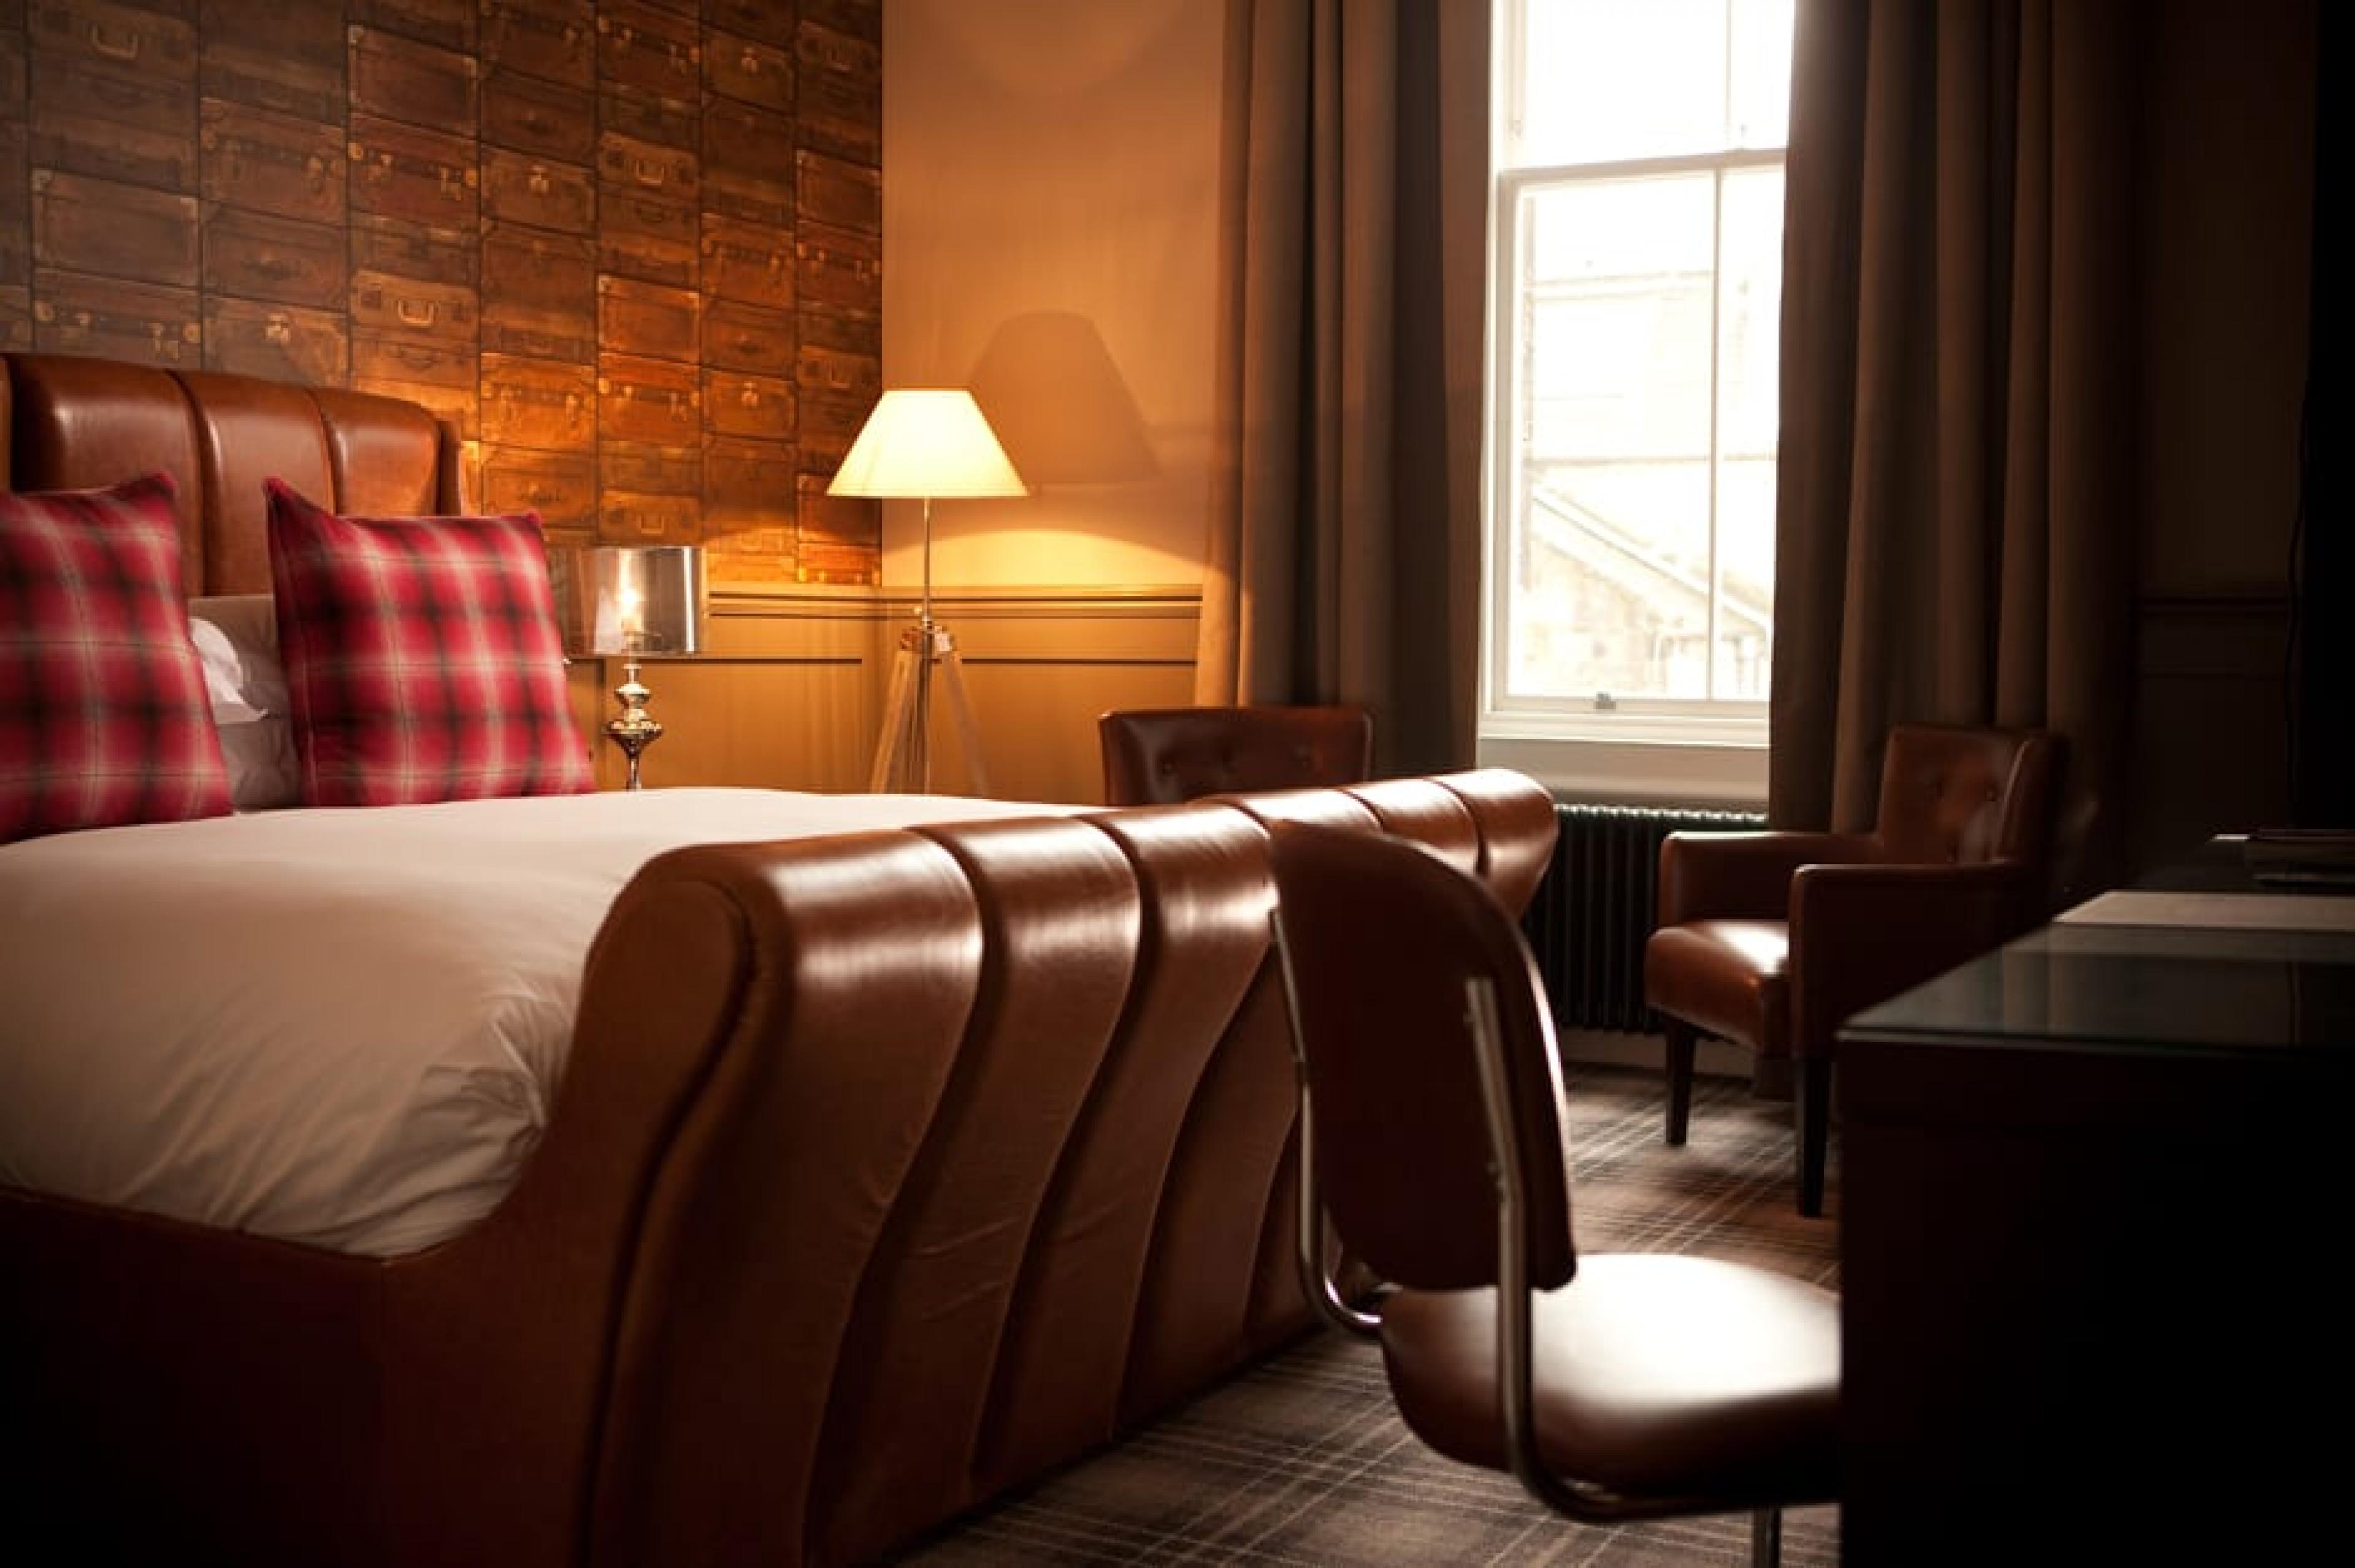 Suite at Hotel du Vin, St Andrews, Scotland